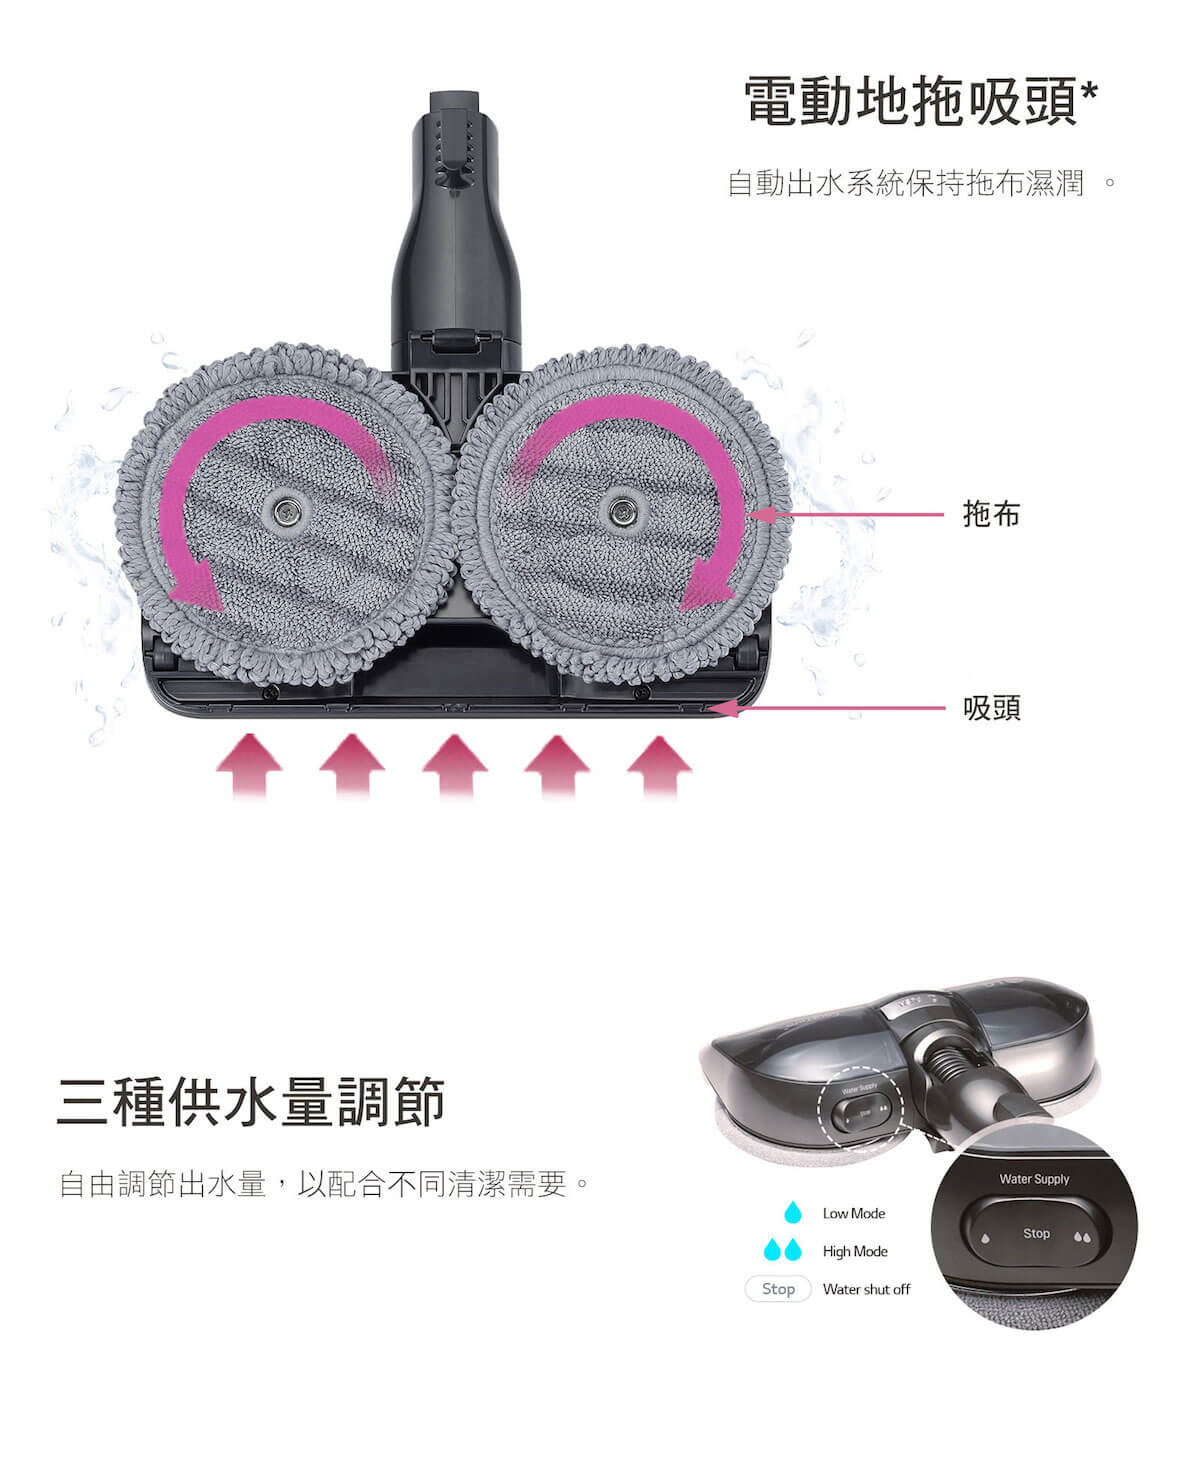 【已停產】LG 樂金 A938SA CordZero™ A9 無線直立式吸塵機 (韓國製造, 星空銀 – 單電池版)